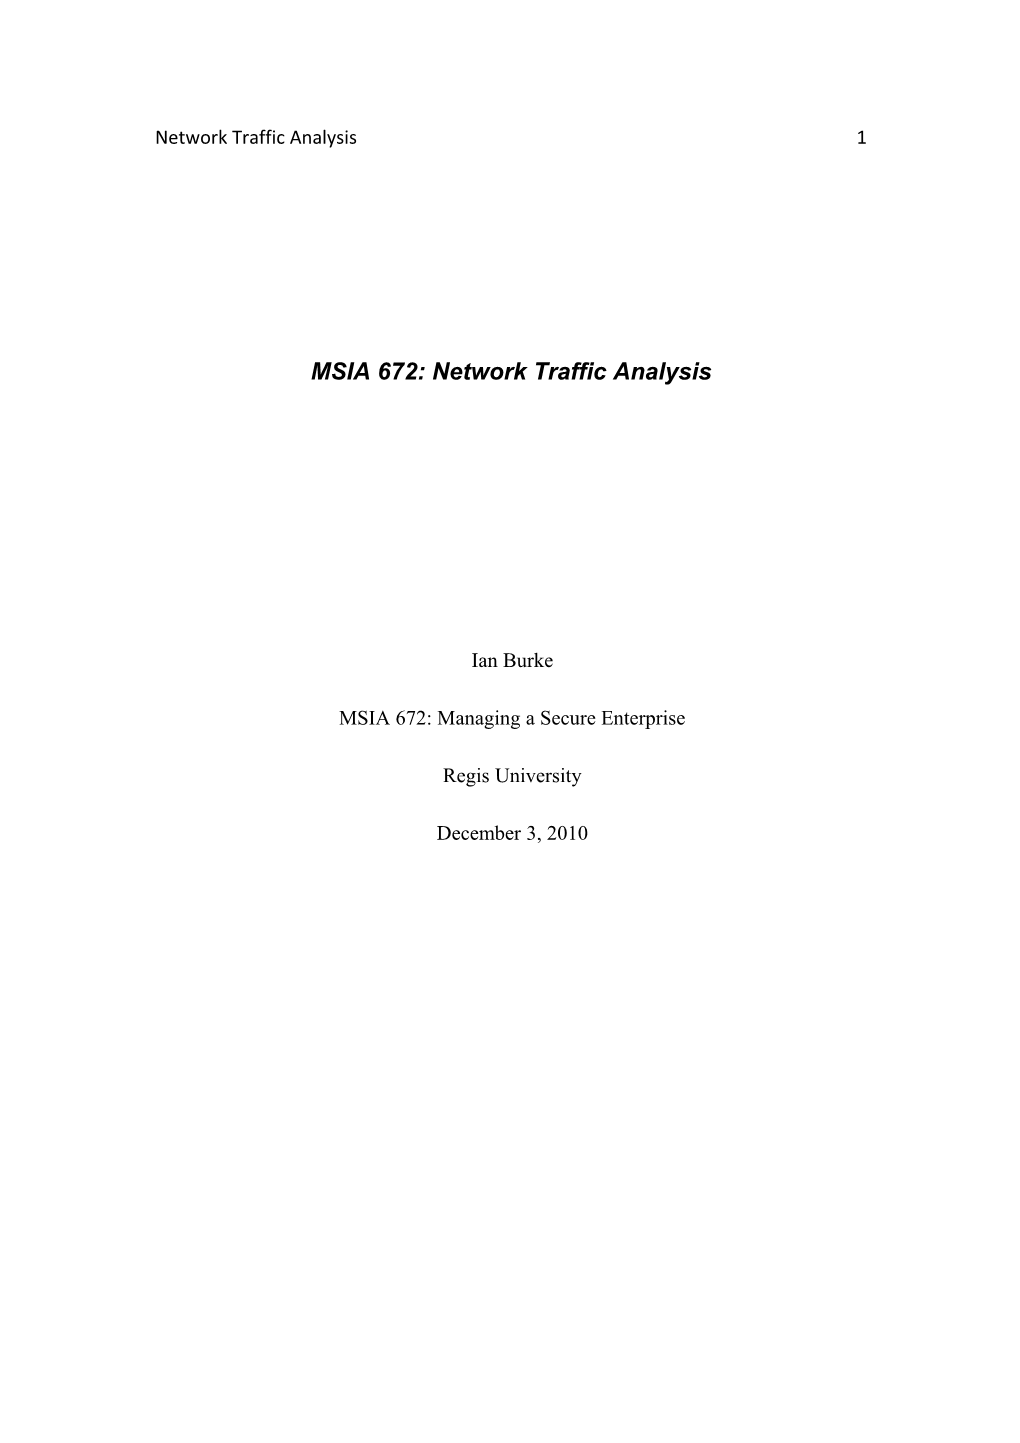 MSIA 672: Network Traffic Analysis